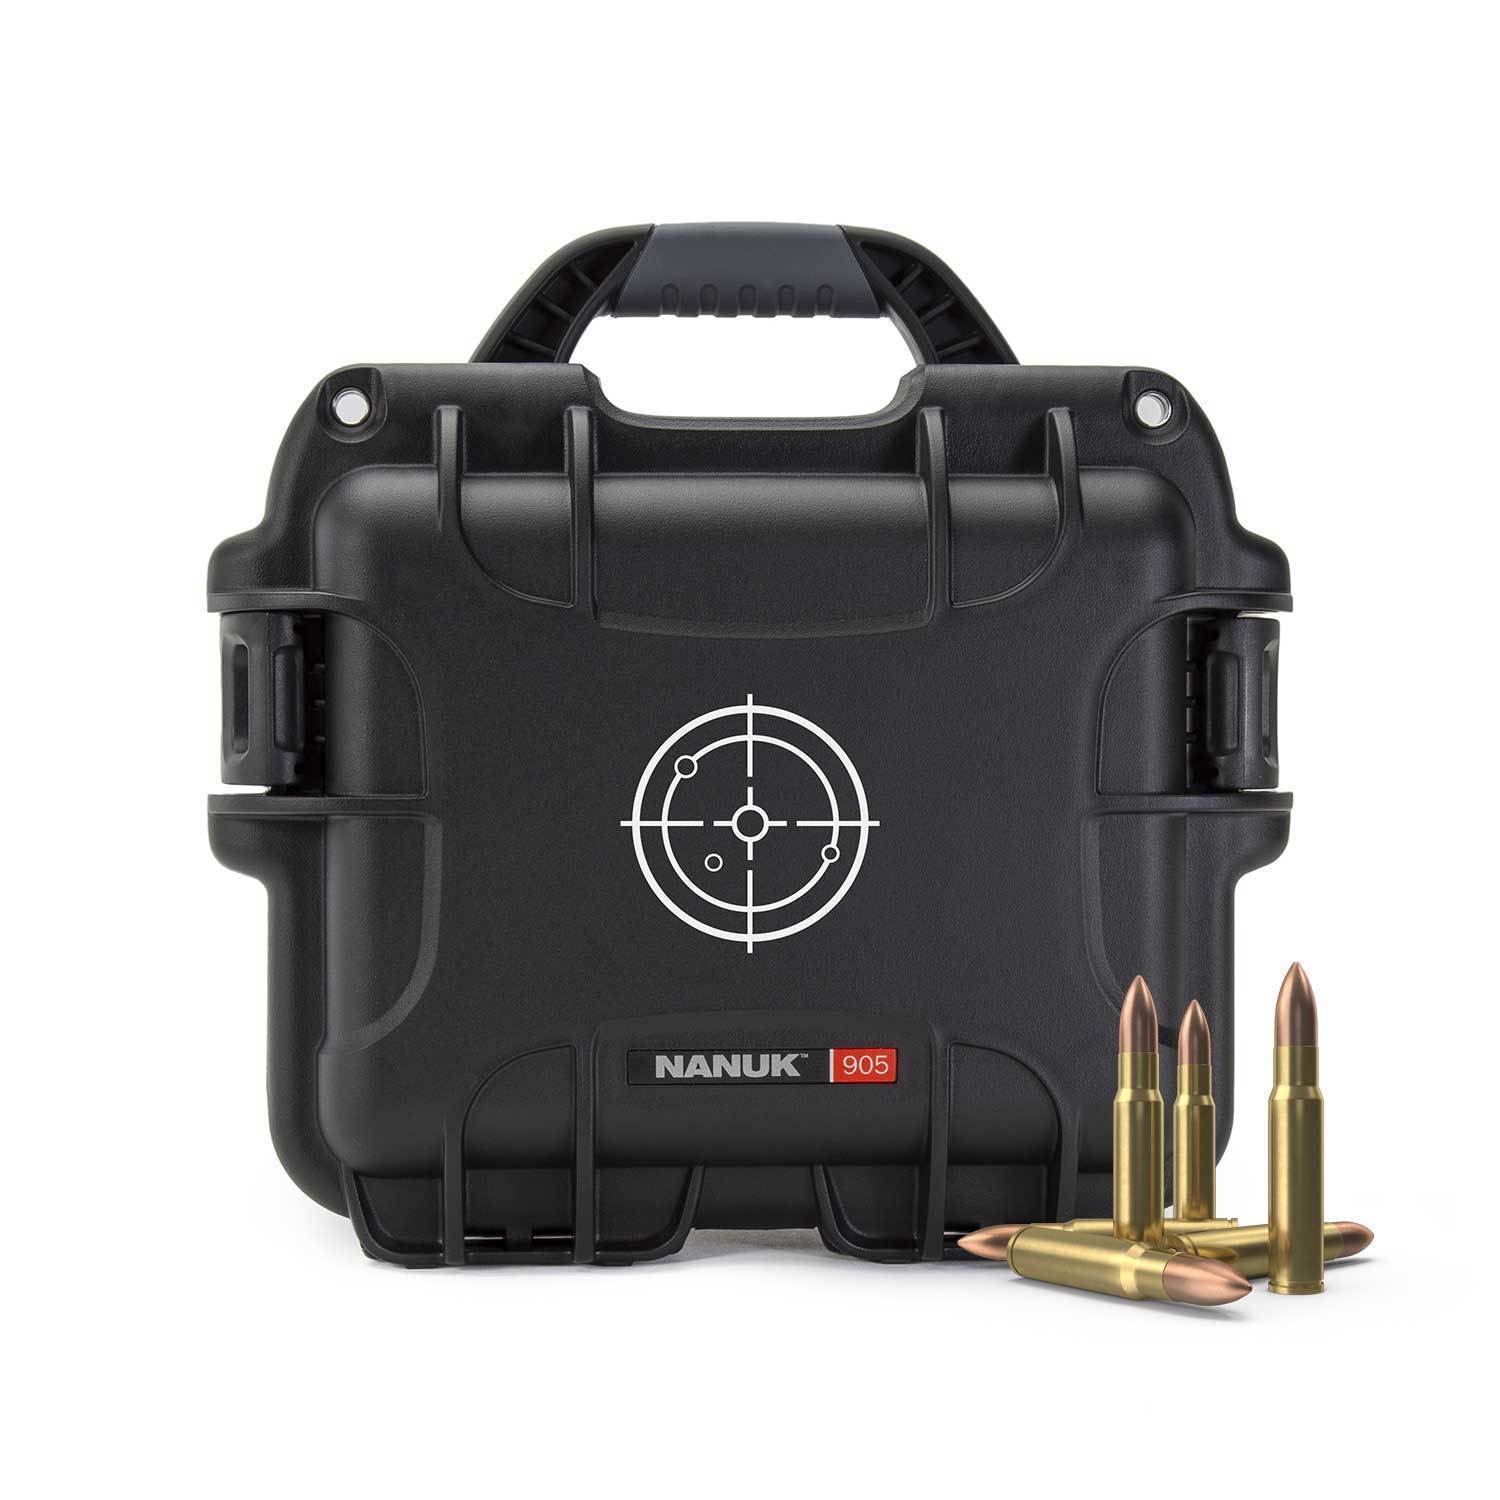 NANUK Gun valises  Official NANUK Protective Gun valise Online Store -  Wasserdicht & Unzerstörbar Hart valise - NANUK Europa